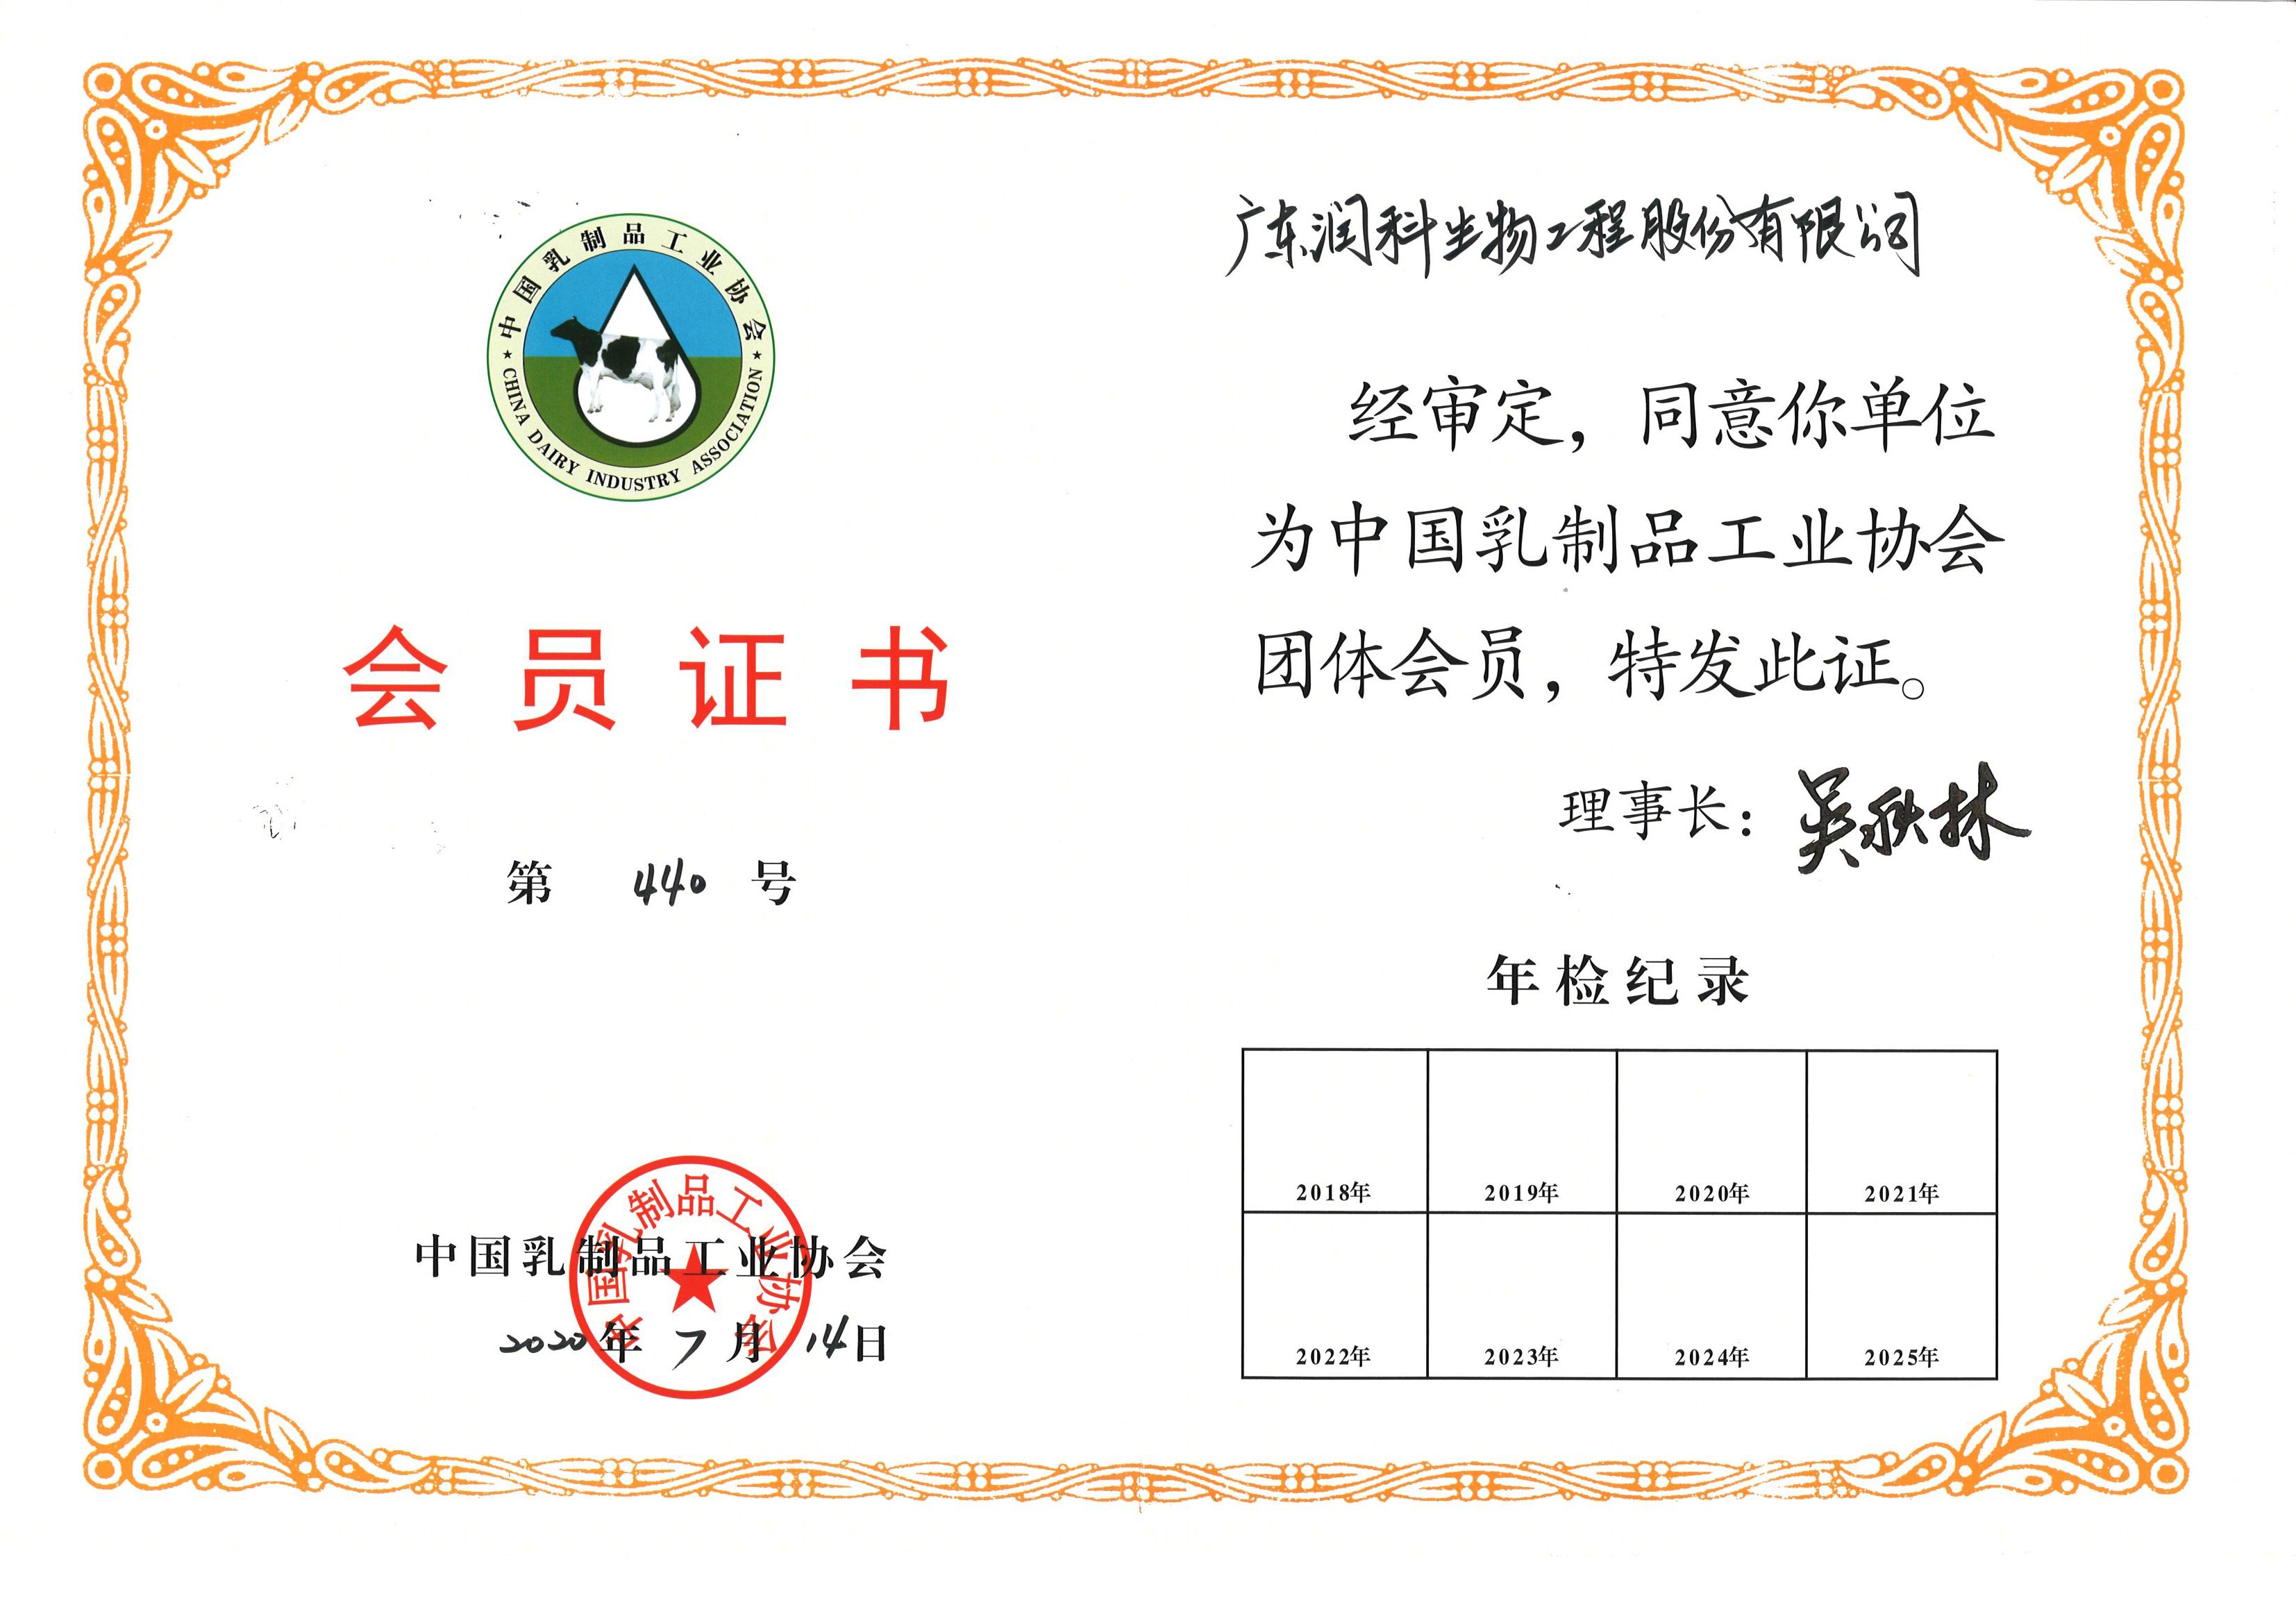 我司加入“中国乳制品工业协会”